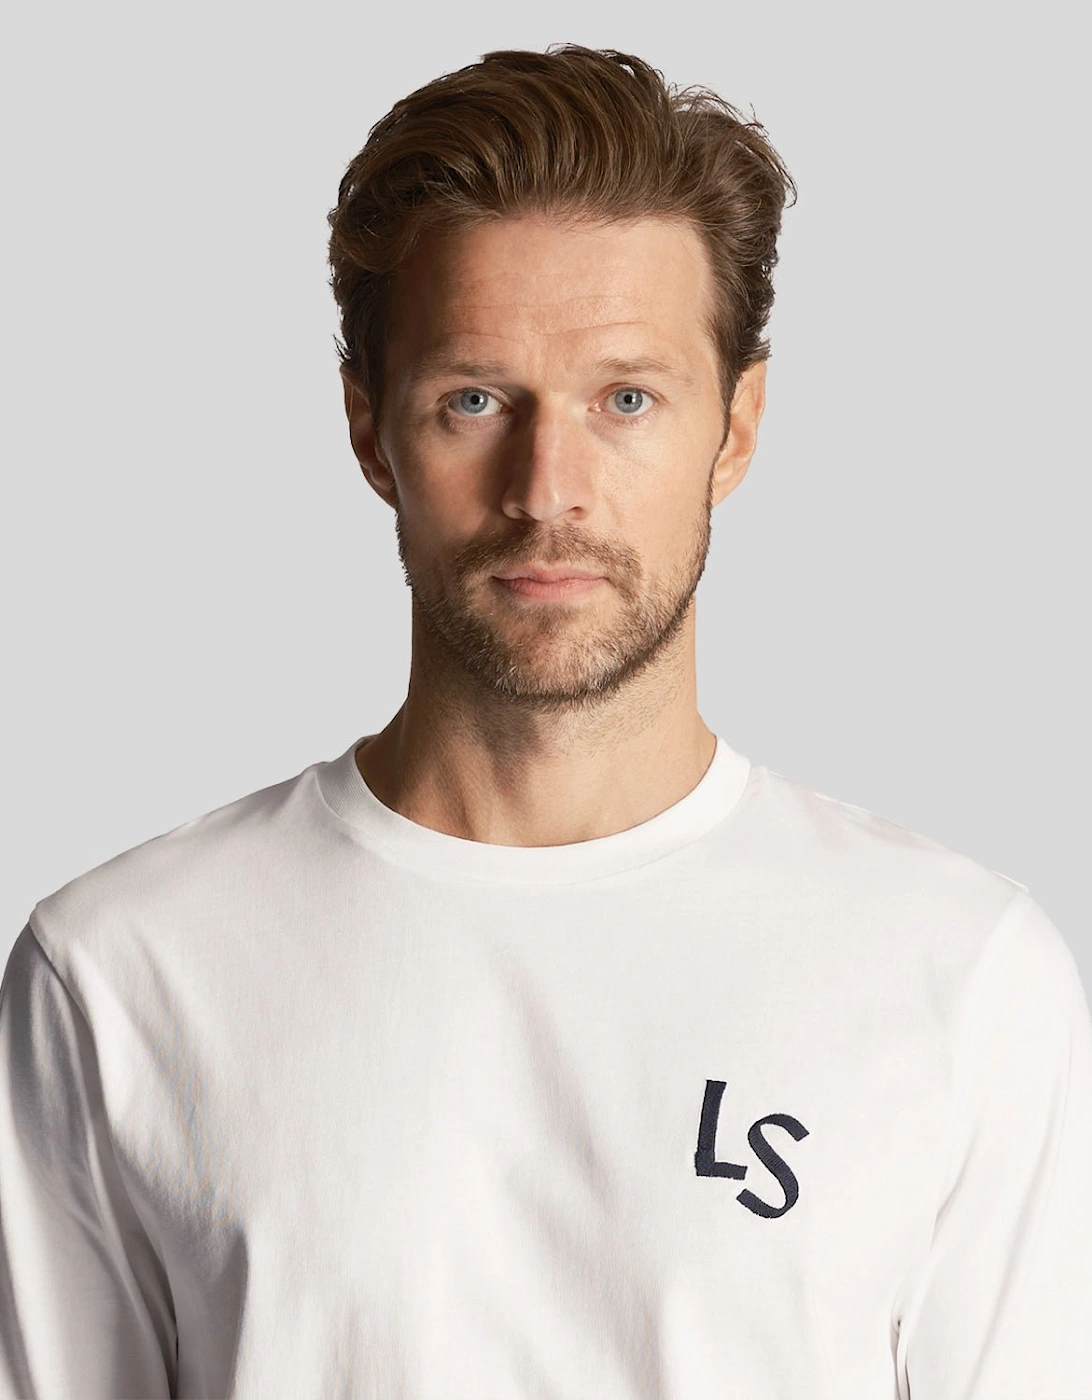 Golf LS Logo T-Shirt